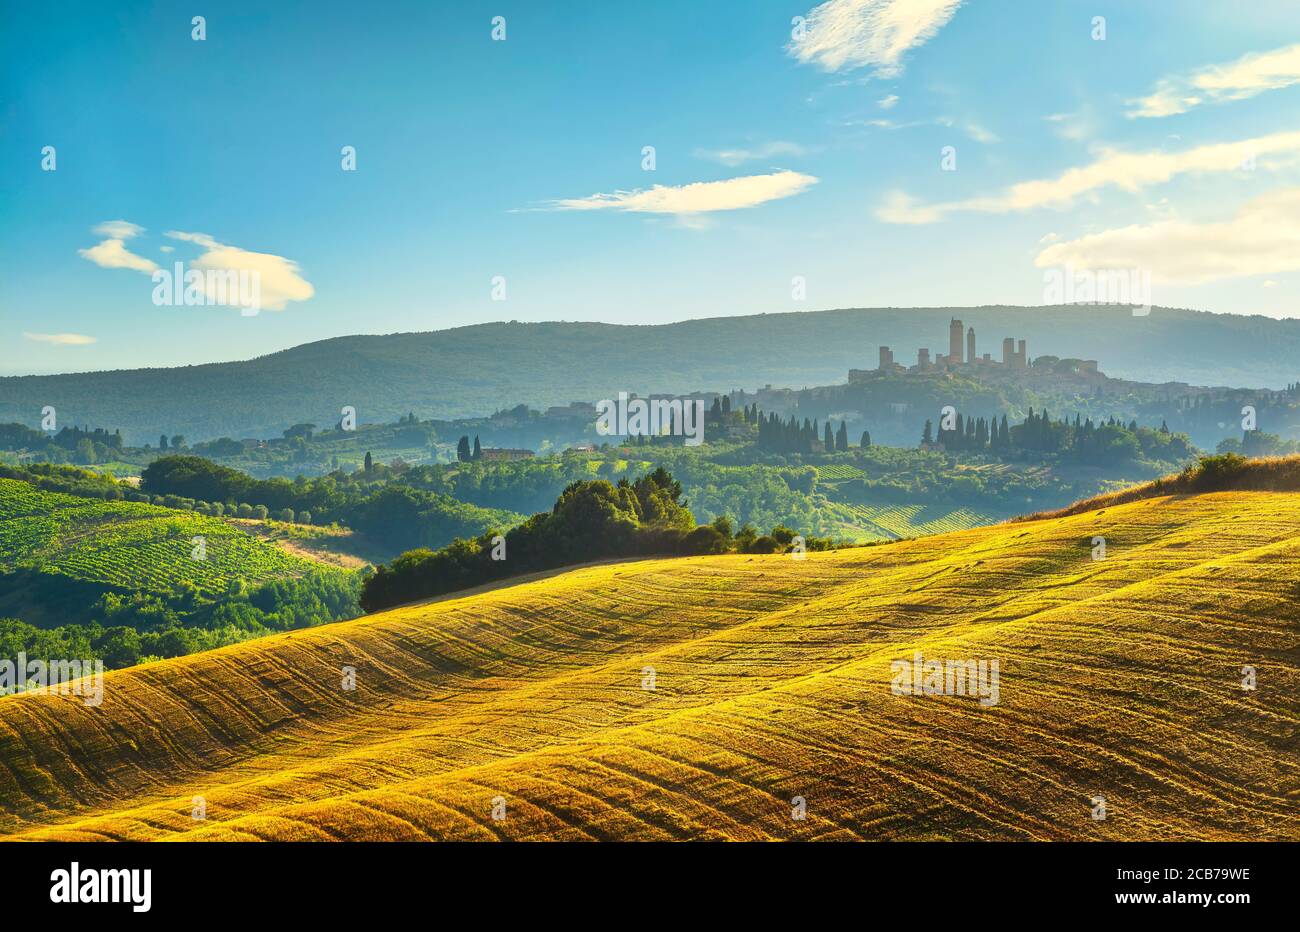 La ville médiévale de San Gimignano surplombe les gratte-ciel et la campagne, et le paysage est panoramique au coucher du soleil. Toscane, Italie, Europe. Banque D'Images